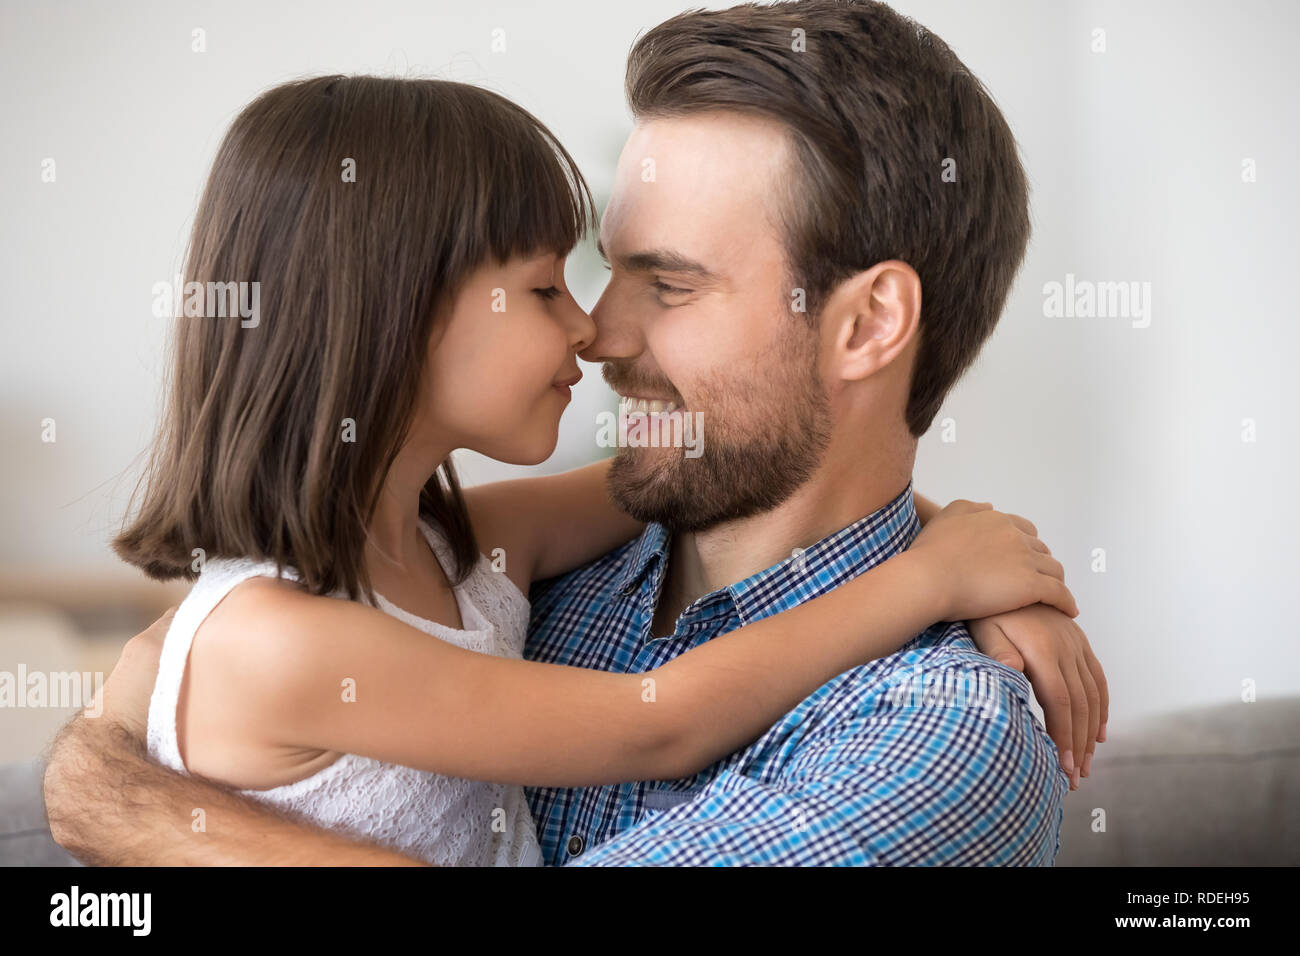 Cute little girl embracing de toucher le nez avec plaisir seul papa Banque D'Images